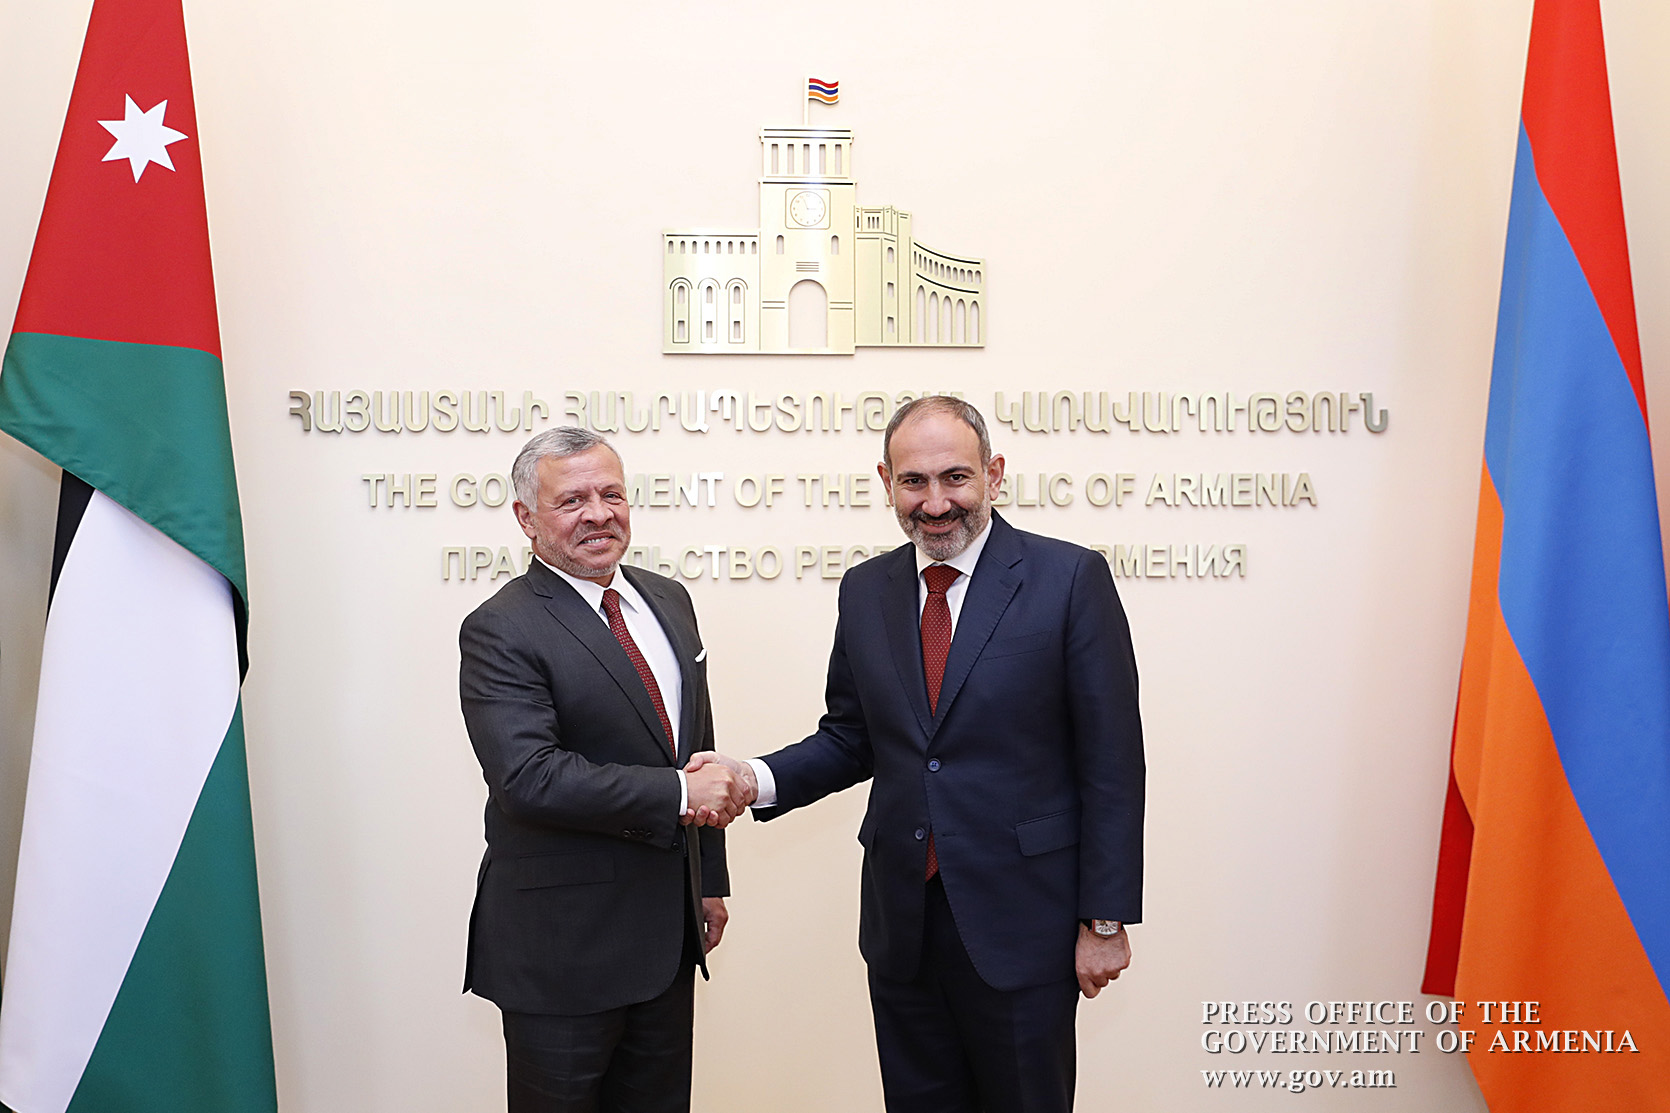 Армения рассматривает Ближний Восток как стратегическое направление партнерства - Пашинян